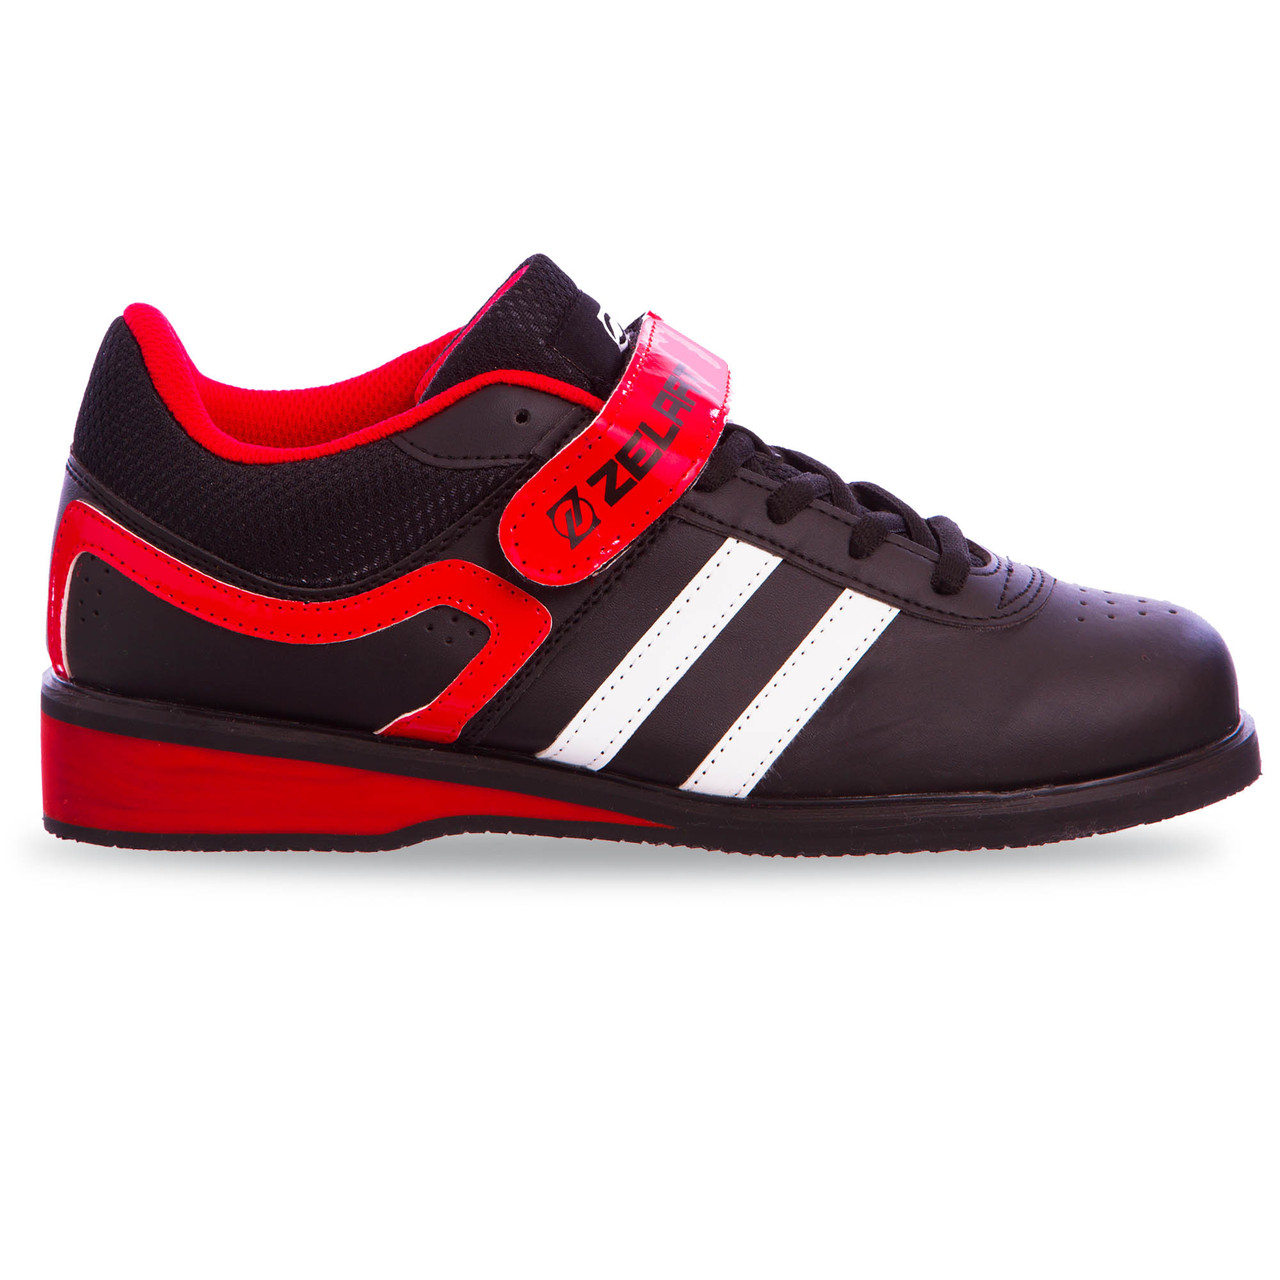 Штангетки взуття для важкої атлетики PU OB-1263 (р-р 40) (верх-PU, підошва TPU, чорний-червоний)